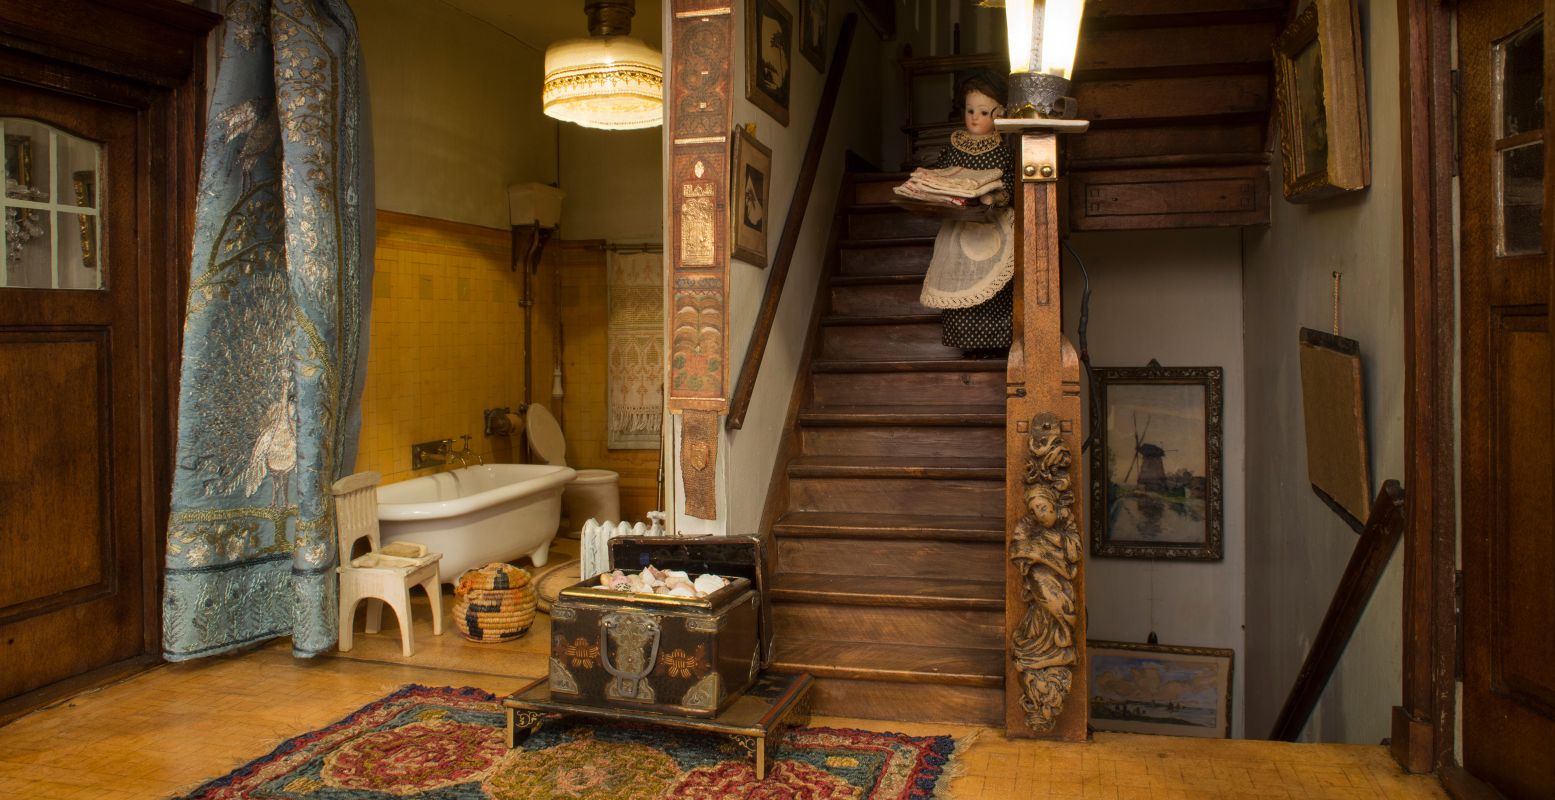 Bediendes, prachtig houtsnijwerk op de trap, elektrische lampen en zelfs een badkamer met stromend water! Alles straalt rijkdom uit. Foto: Haags Historisch Museum